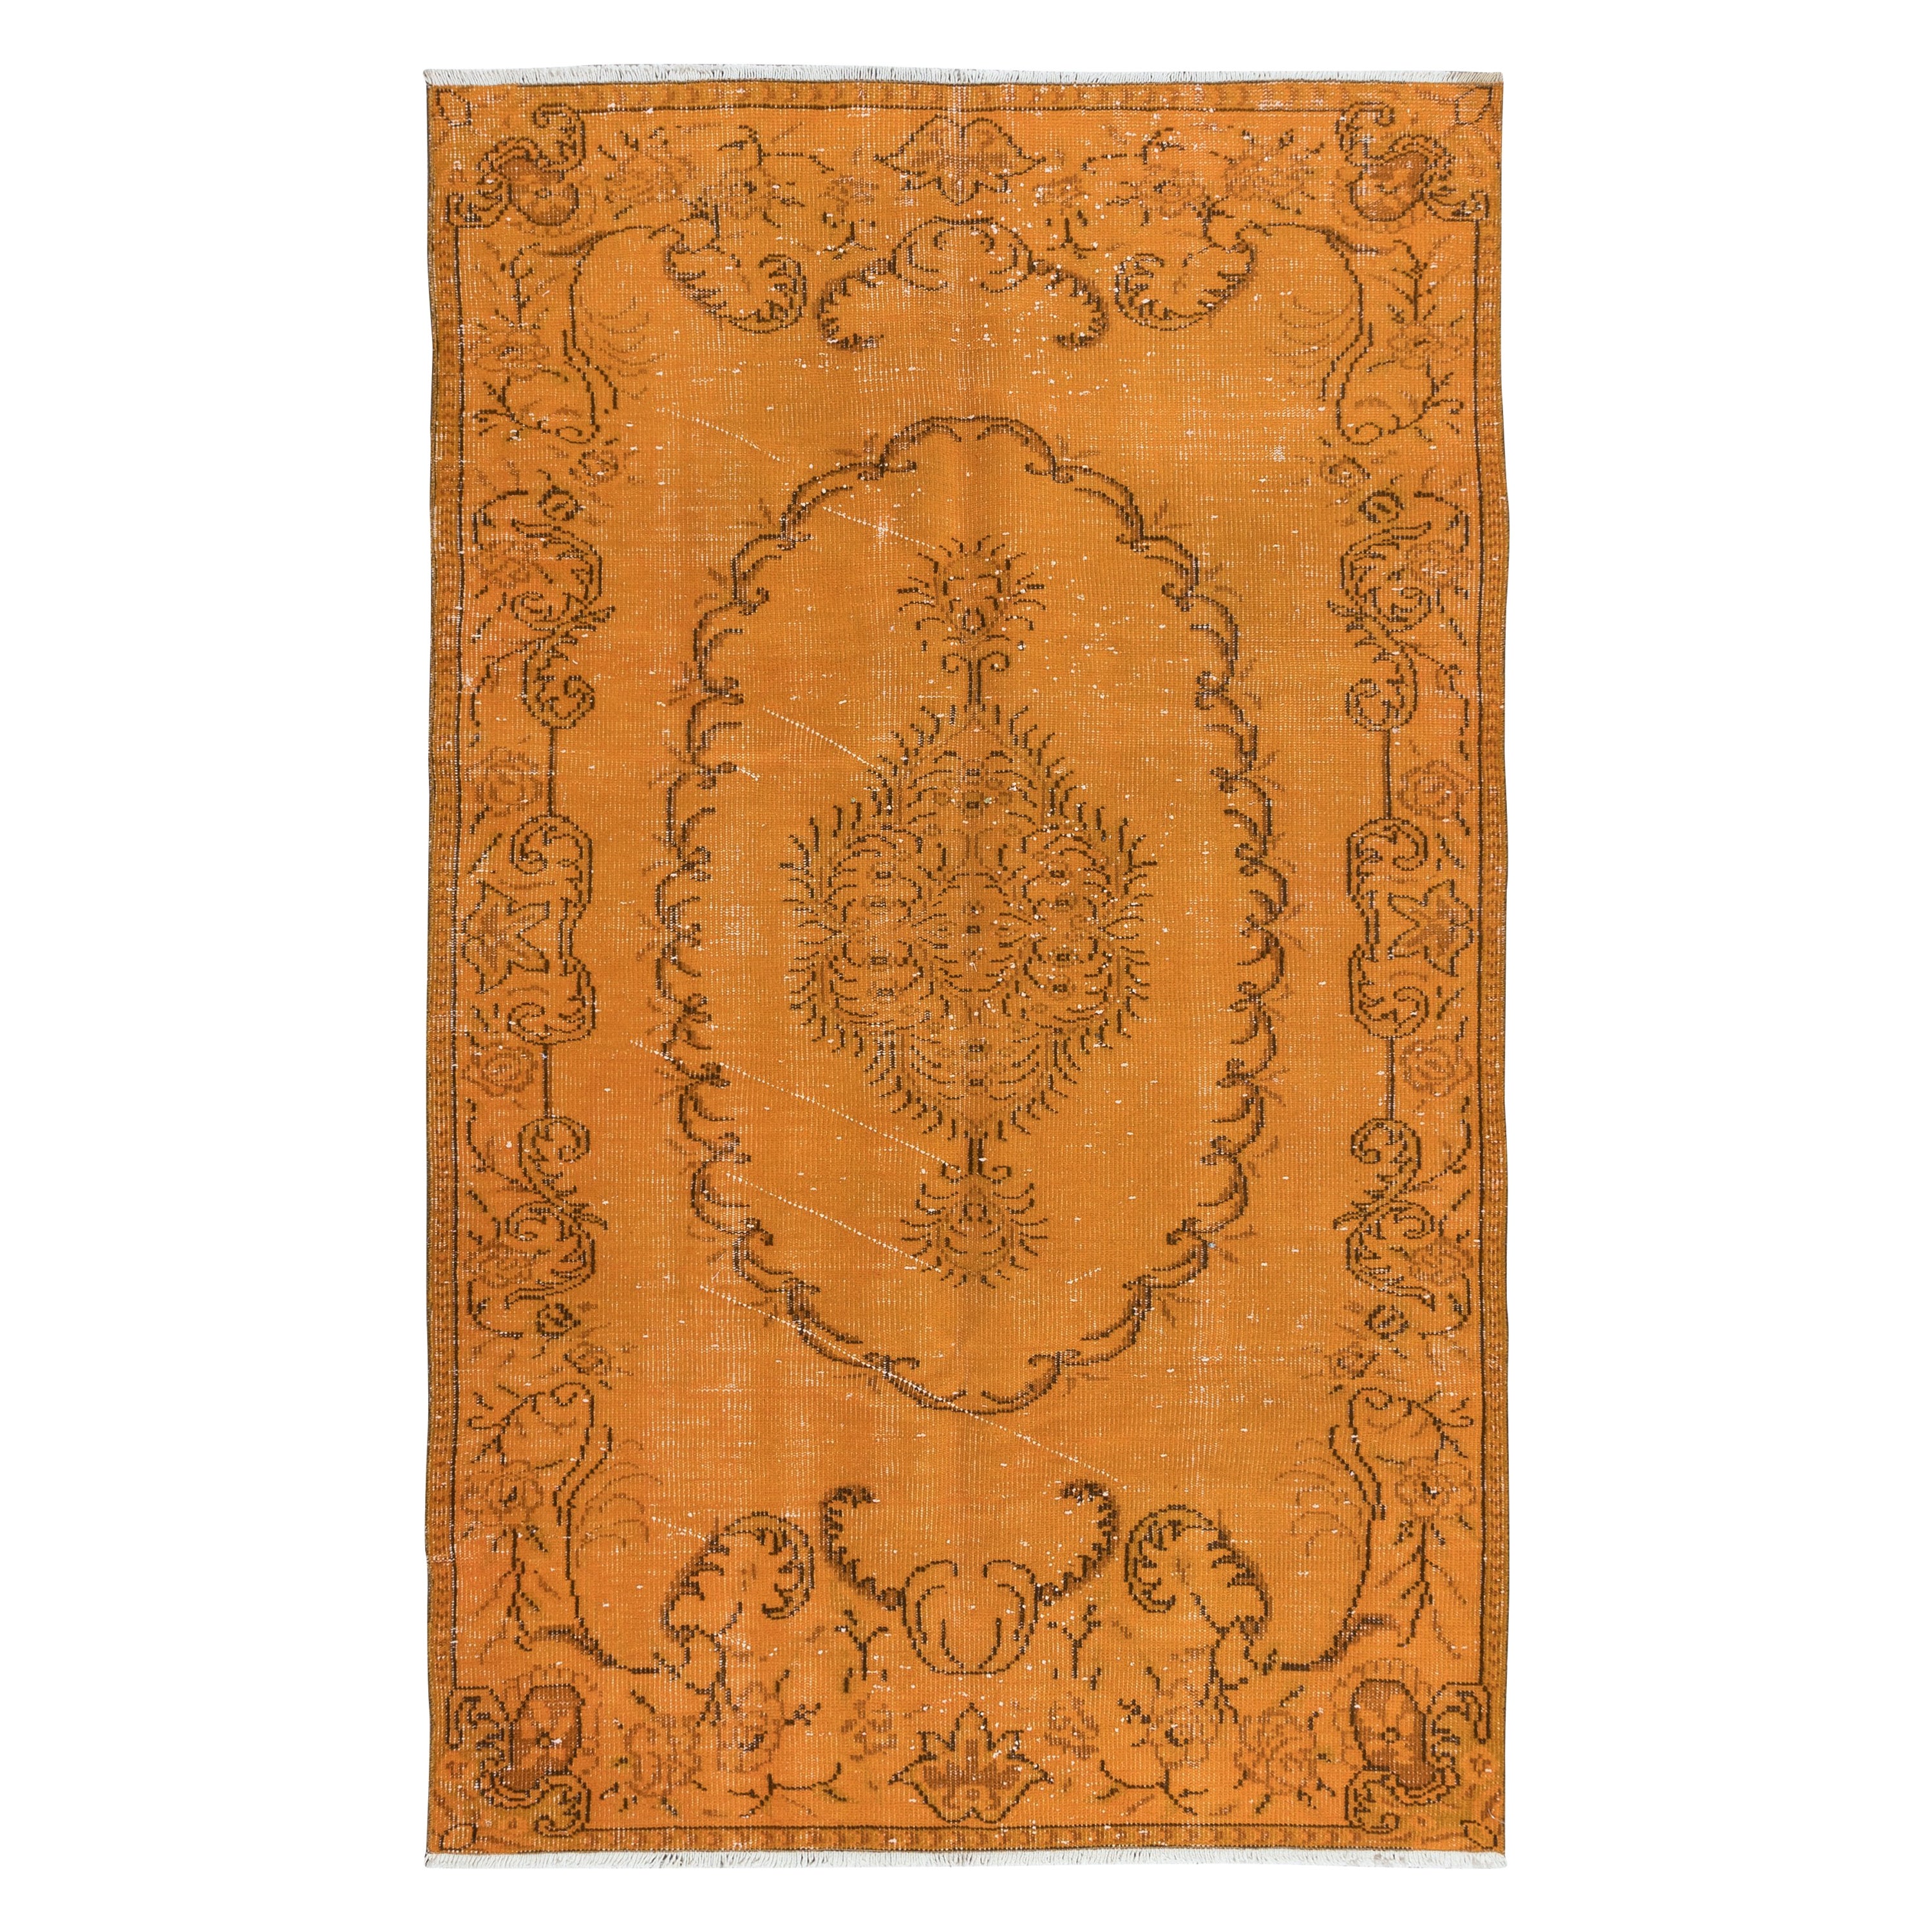 Handgefertigter türkischer 5x8 Ft Orangefarbener Teppich, Bohem Eklektischer Teppich in Zimmergröße